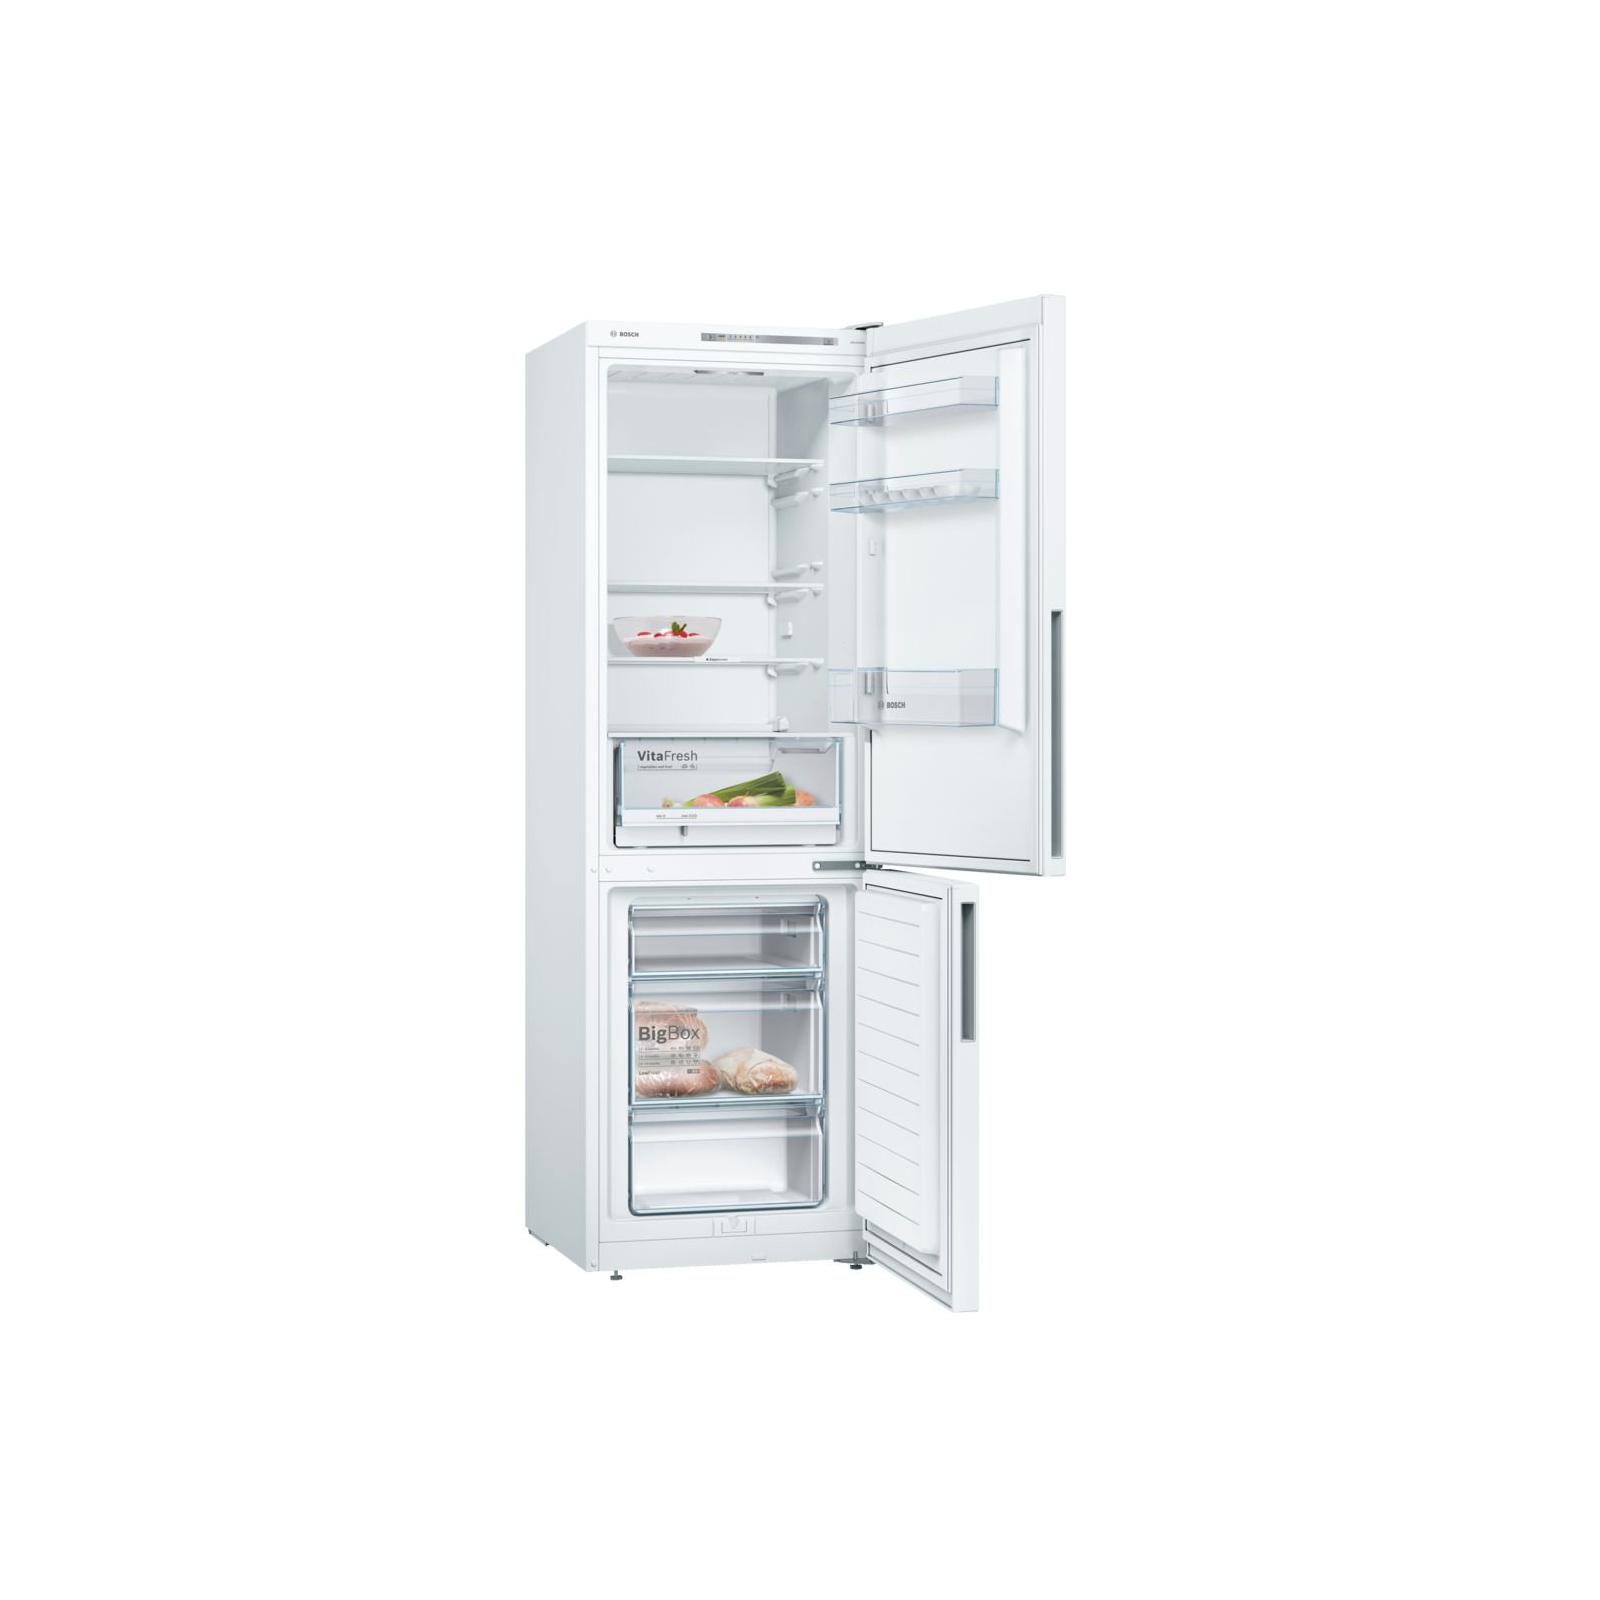 Холодильник Bosch KGV36UW206 изображение 2